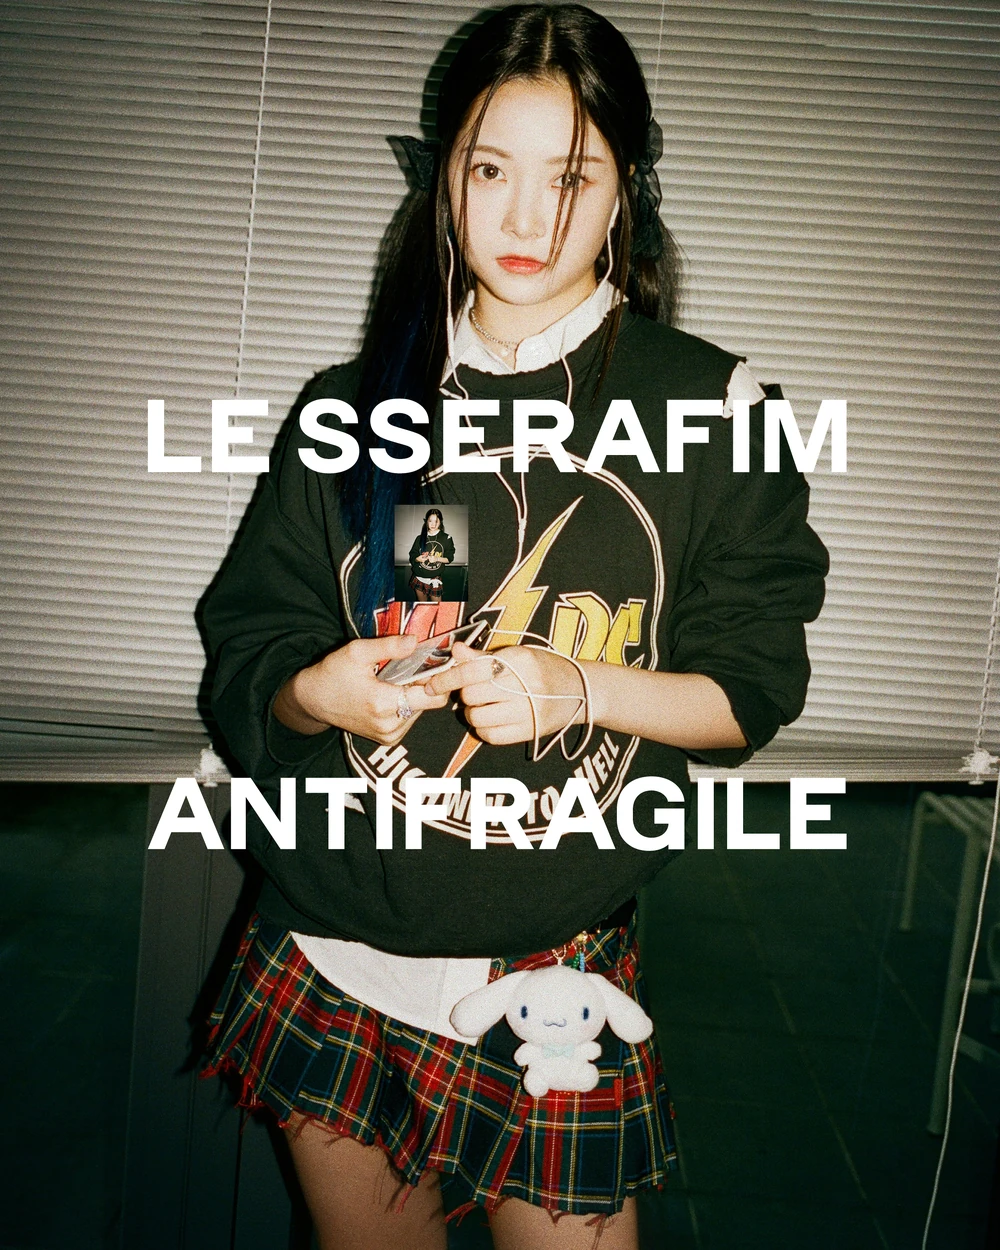 Le Sserafim Antifragile Eunchae Concept Teaser Picture Image Photo Kpop K-Concept 5